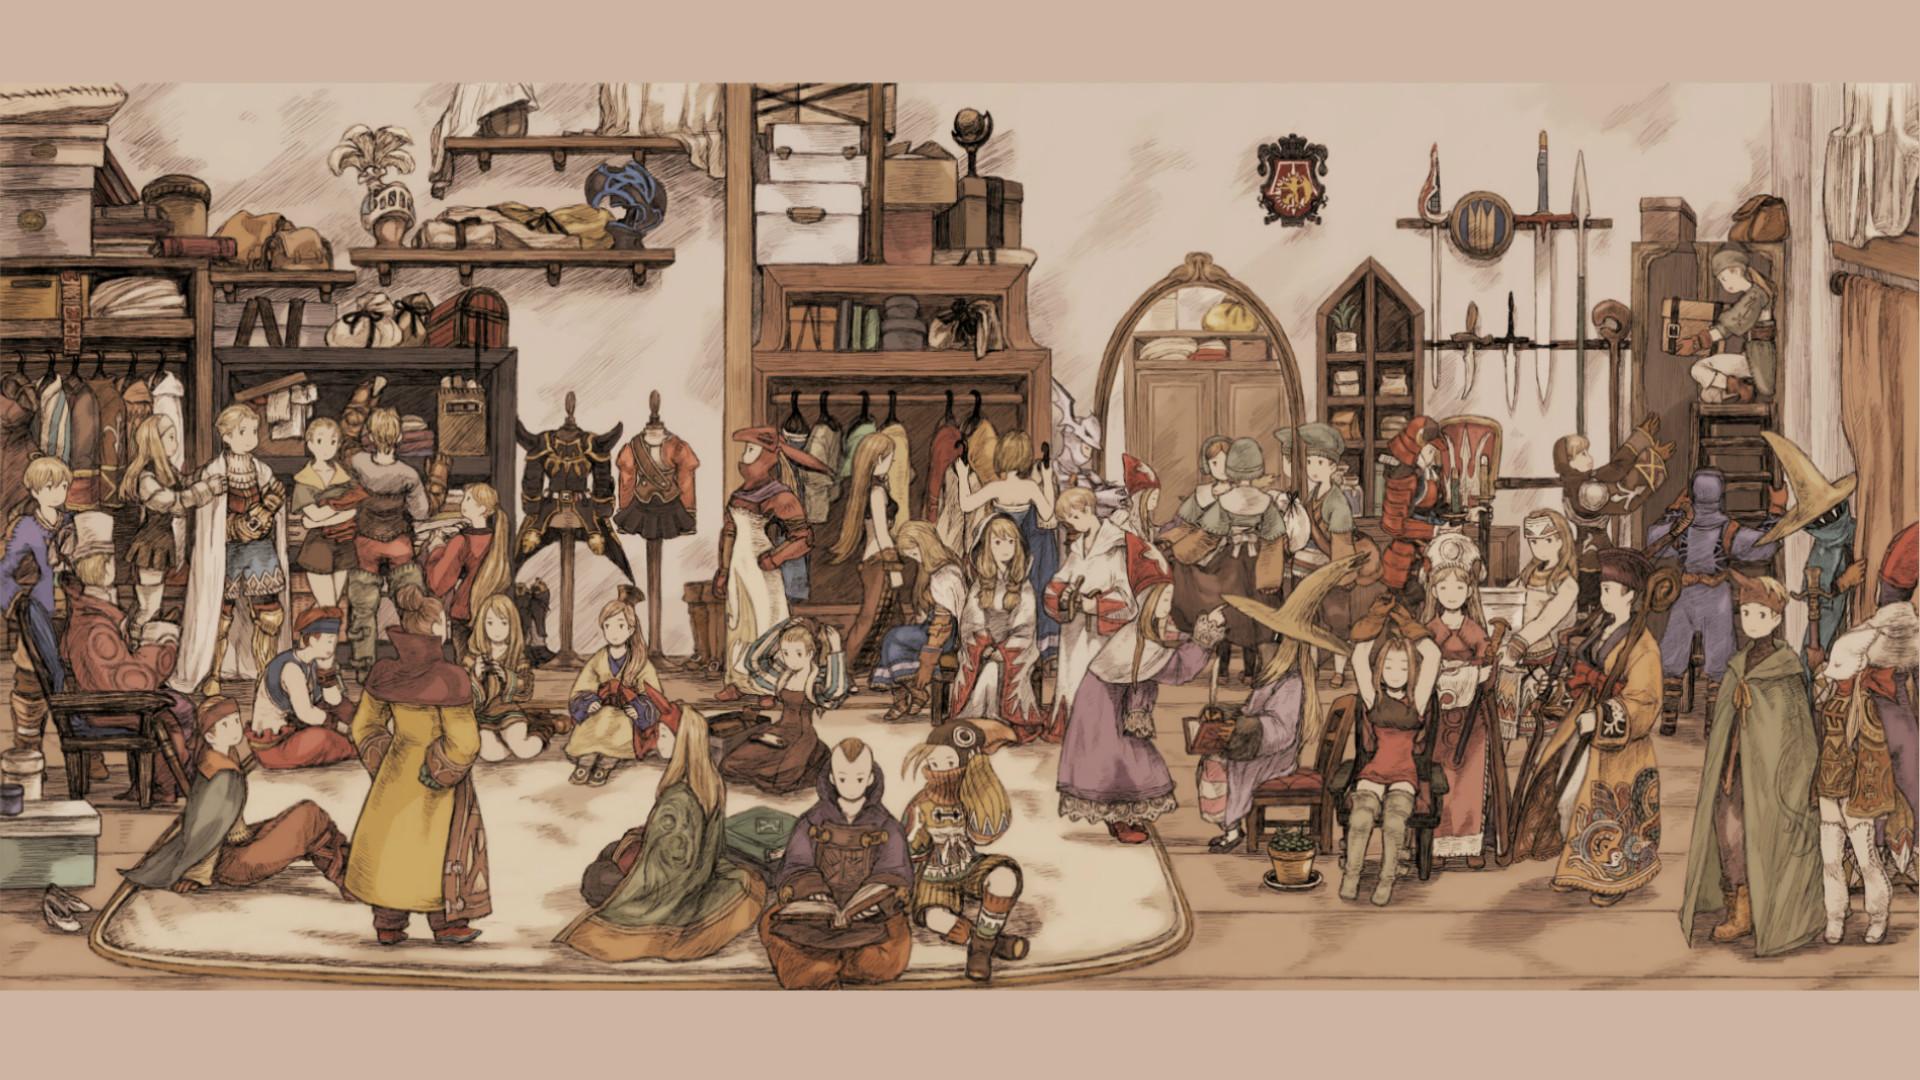 Final Fantasy Tactics Wallpapers Wallpaper Cave